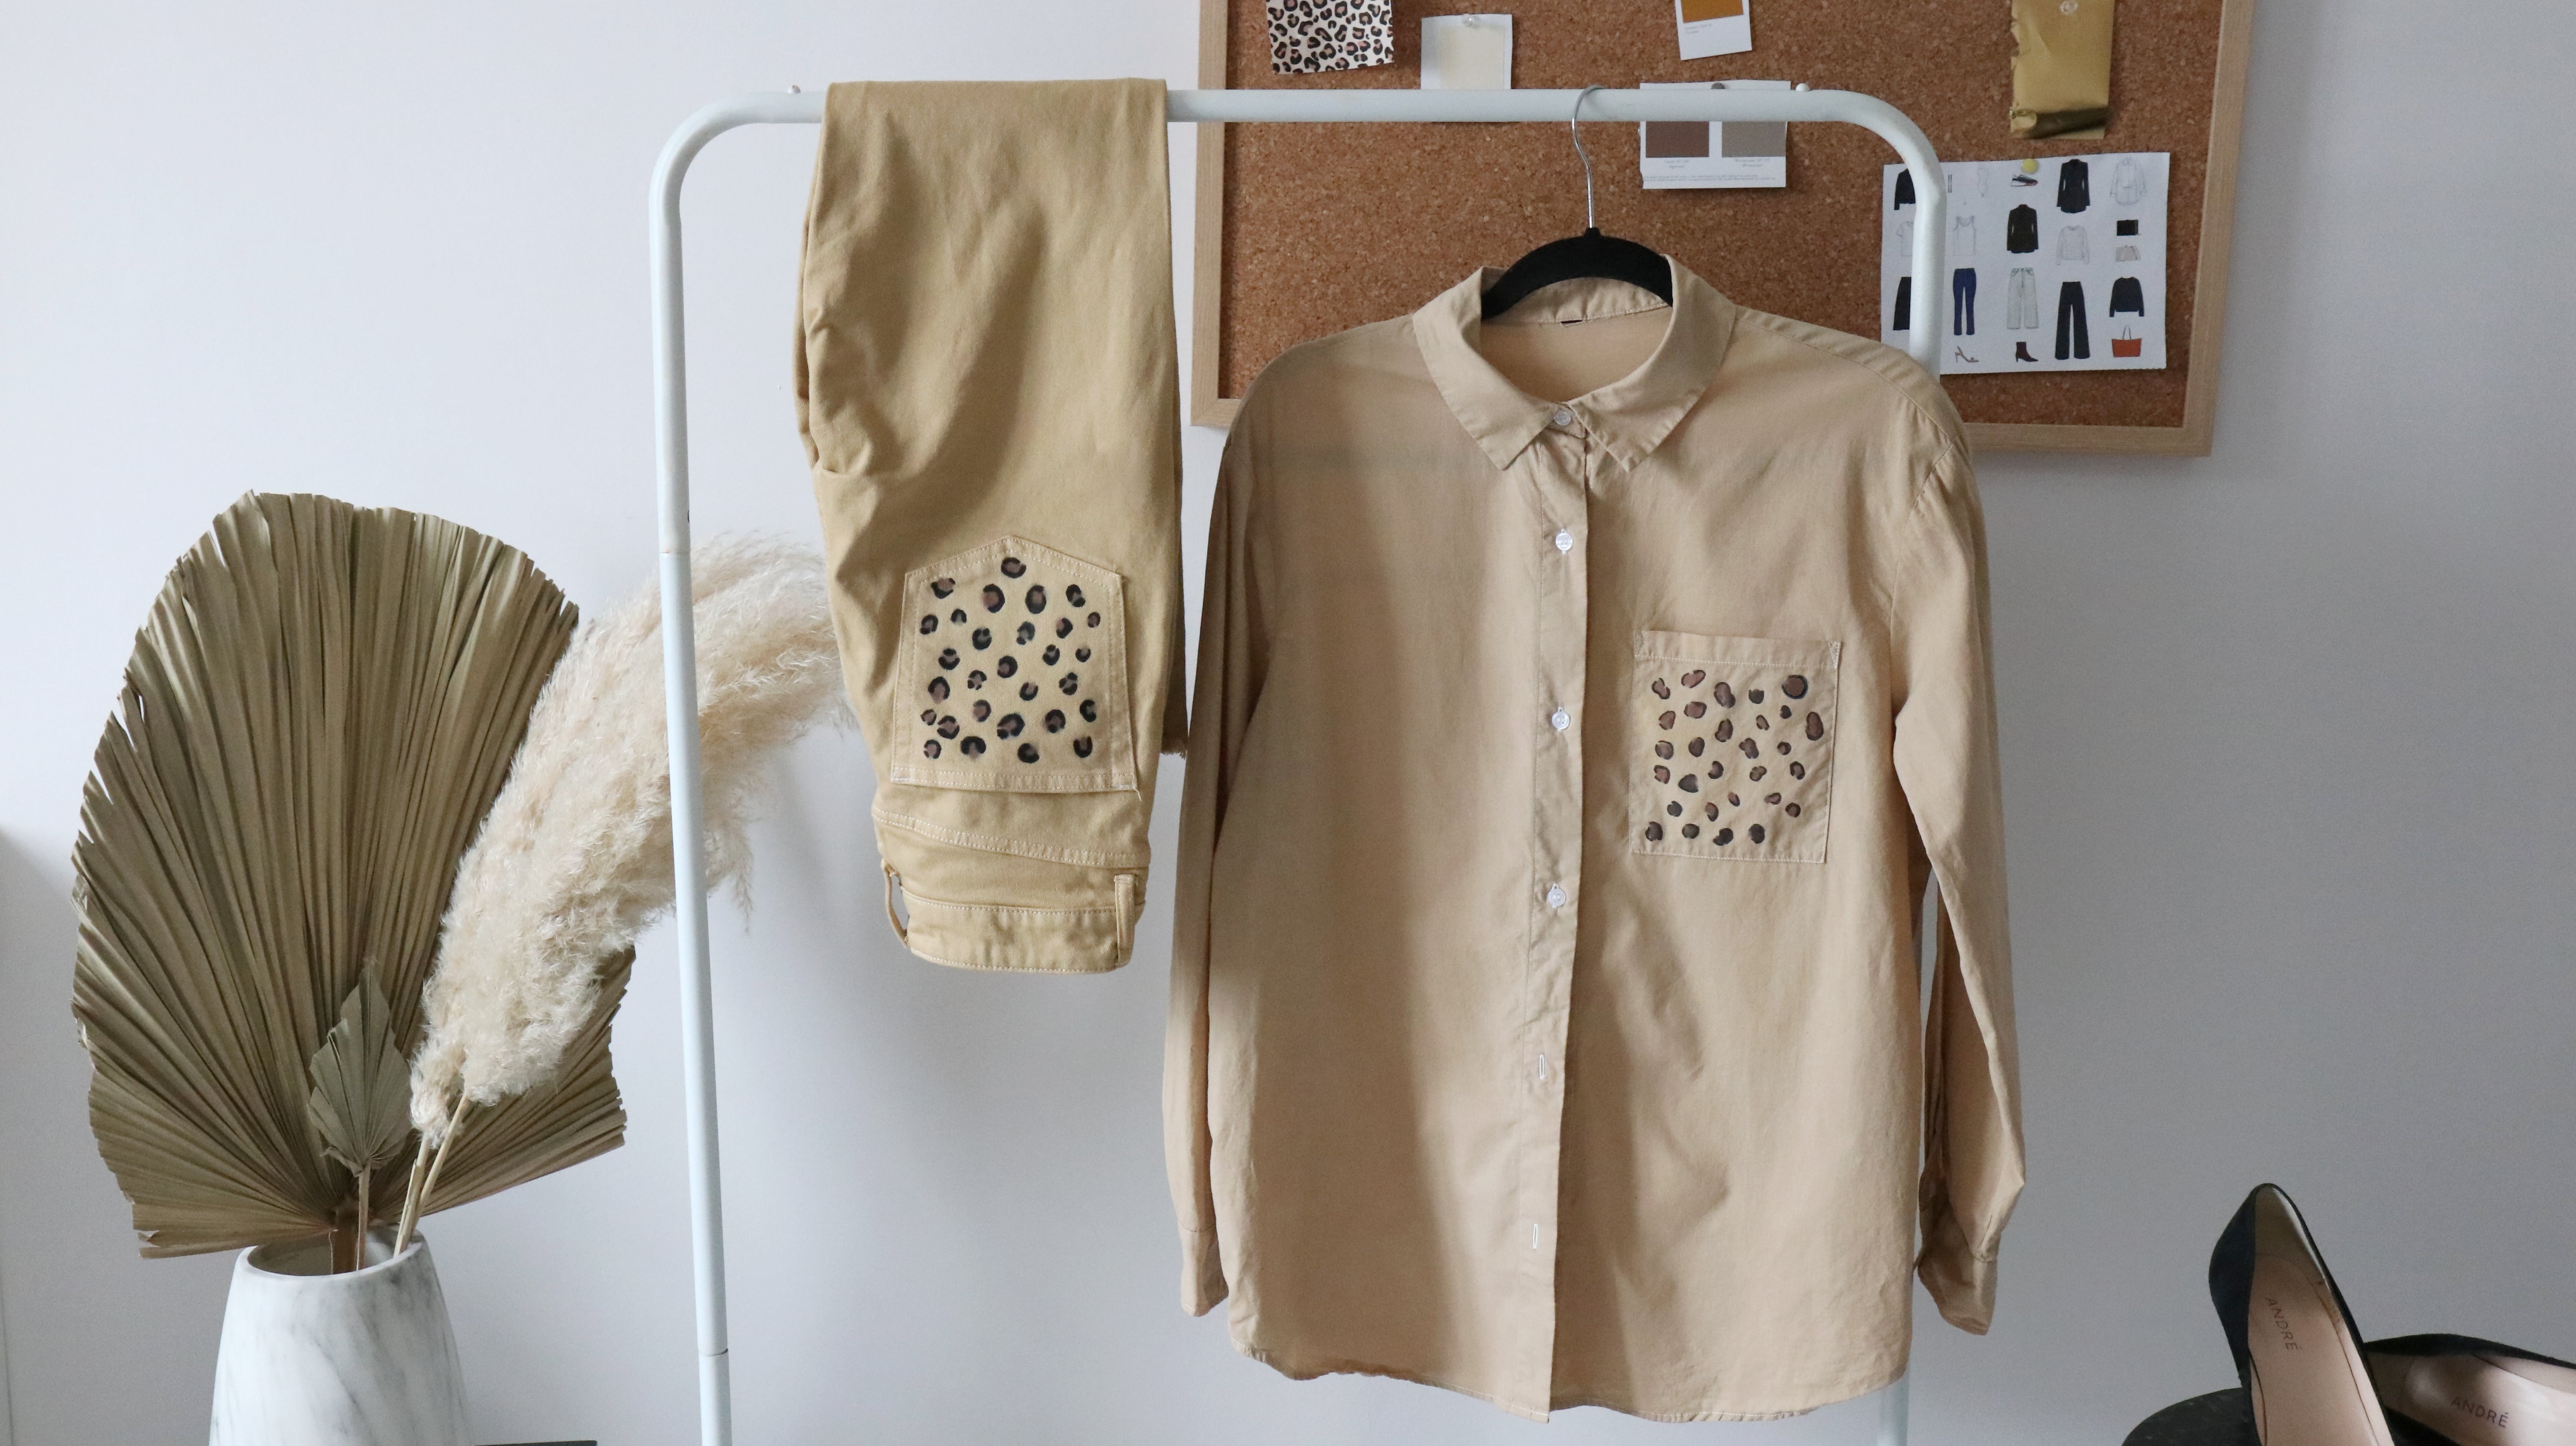 DIY : Personnaliser ses vêtements avec l'imprimé léopard